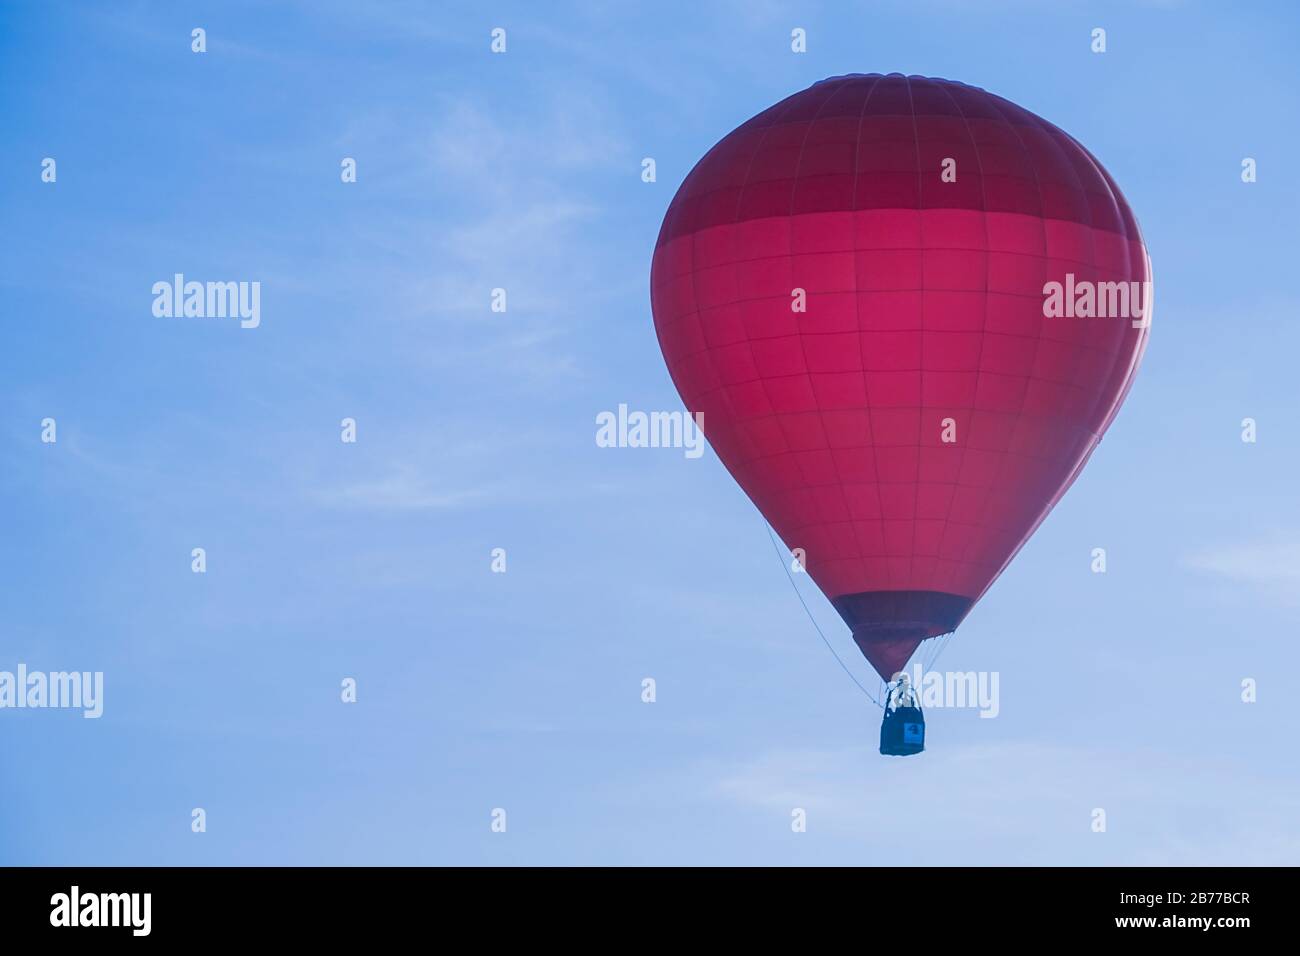 Un festival de montgolfière comprend des parapentes, des ballons à air chaud et d'autres formes de transports aériens. Le lancement du ballon à air chaud étant l'événement principal. Banque D'Images